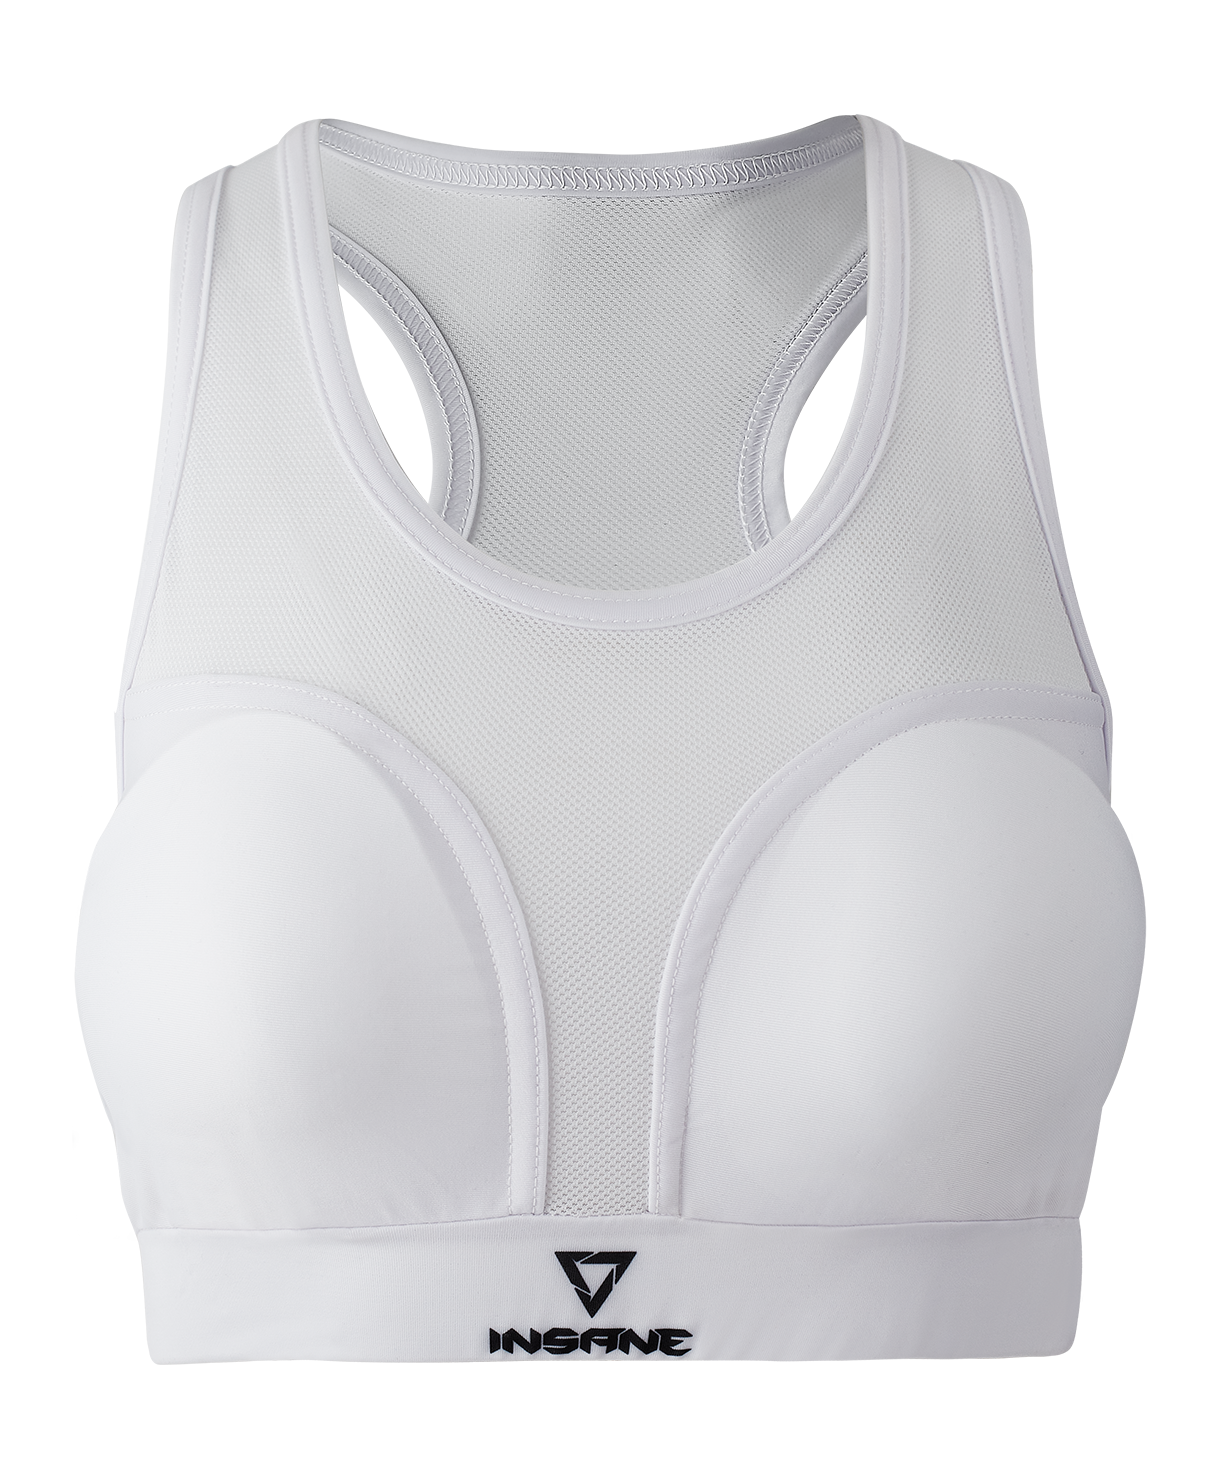 Защита груди Insane Protec W, белый, женский размер M